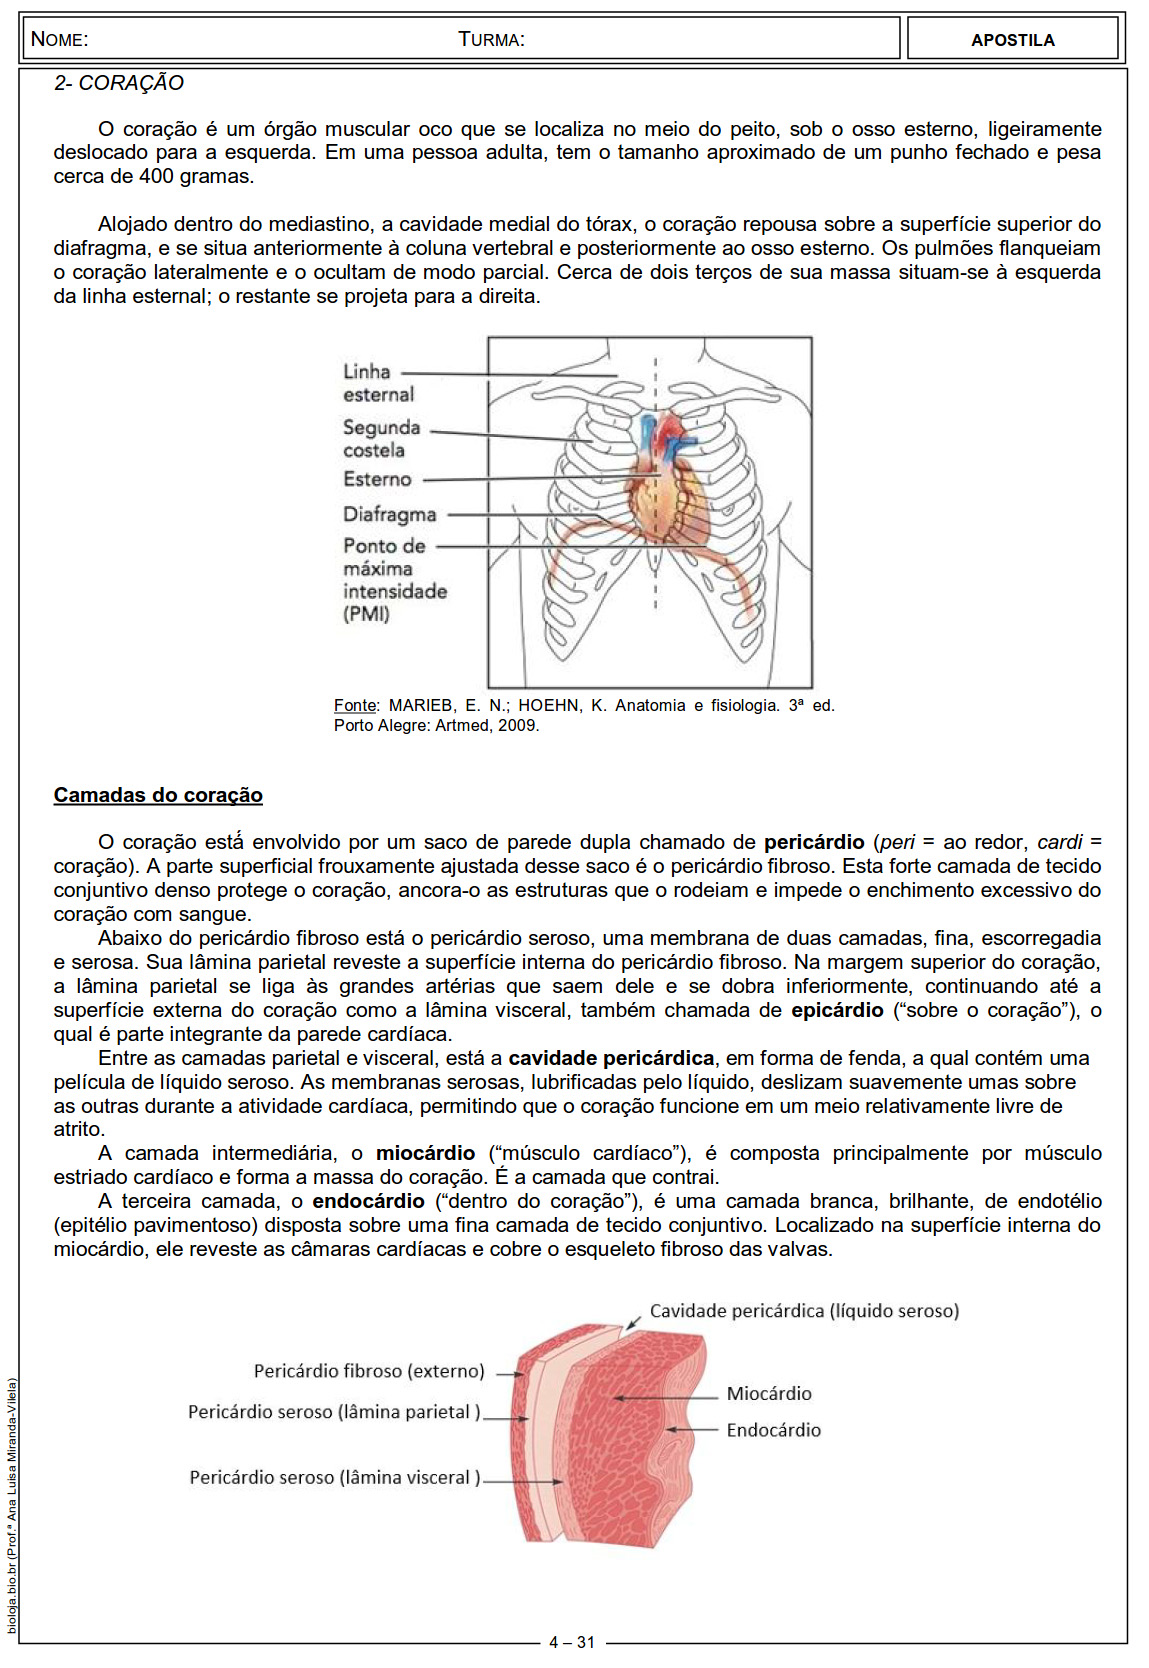 Apostila Fisiologia de órgãos e sistema I: sistema circulatório, sangue e coagulação sanguínea slide 4